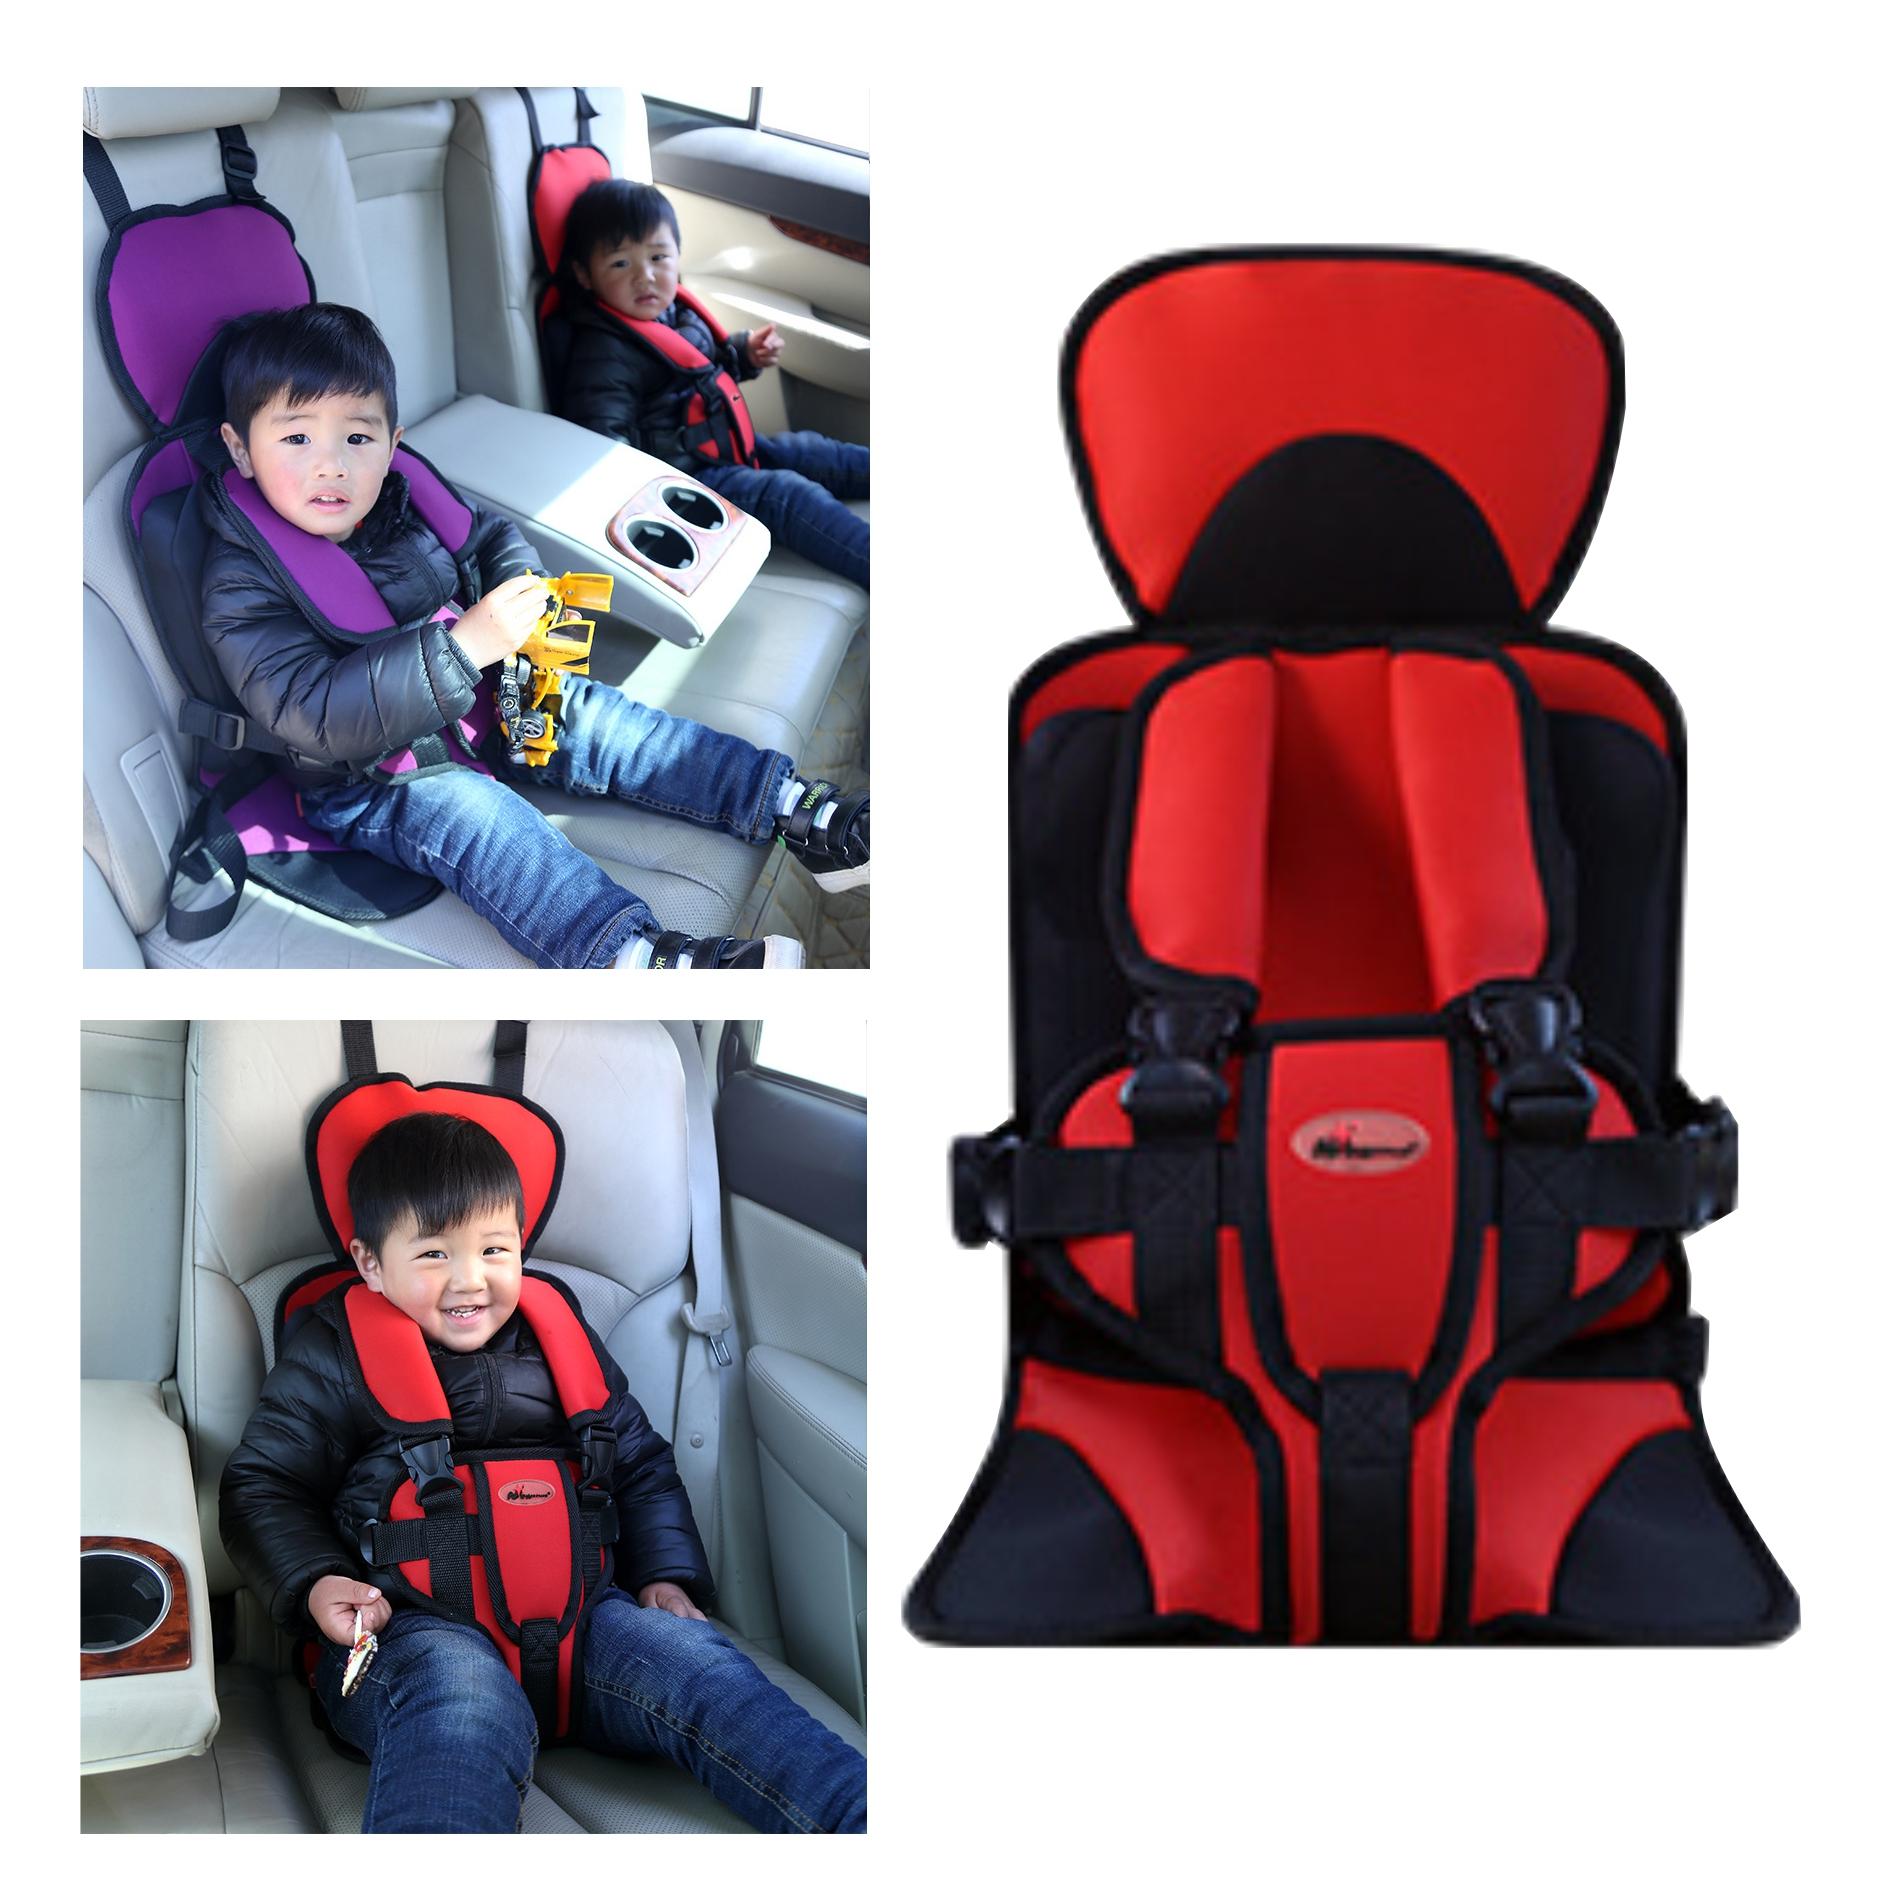 Baby Car Seat ที่นั่งสำหรับเด็กในรถยนต์ เบาะนั่งนิรภัยในรถยนต์ รุ่น NS-119